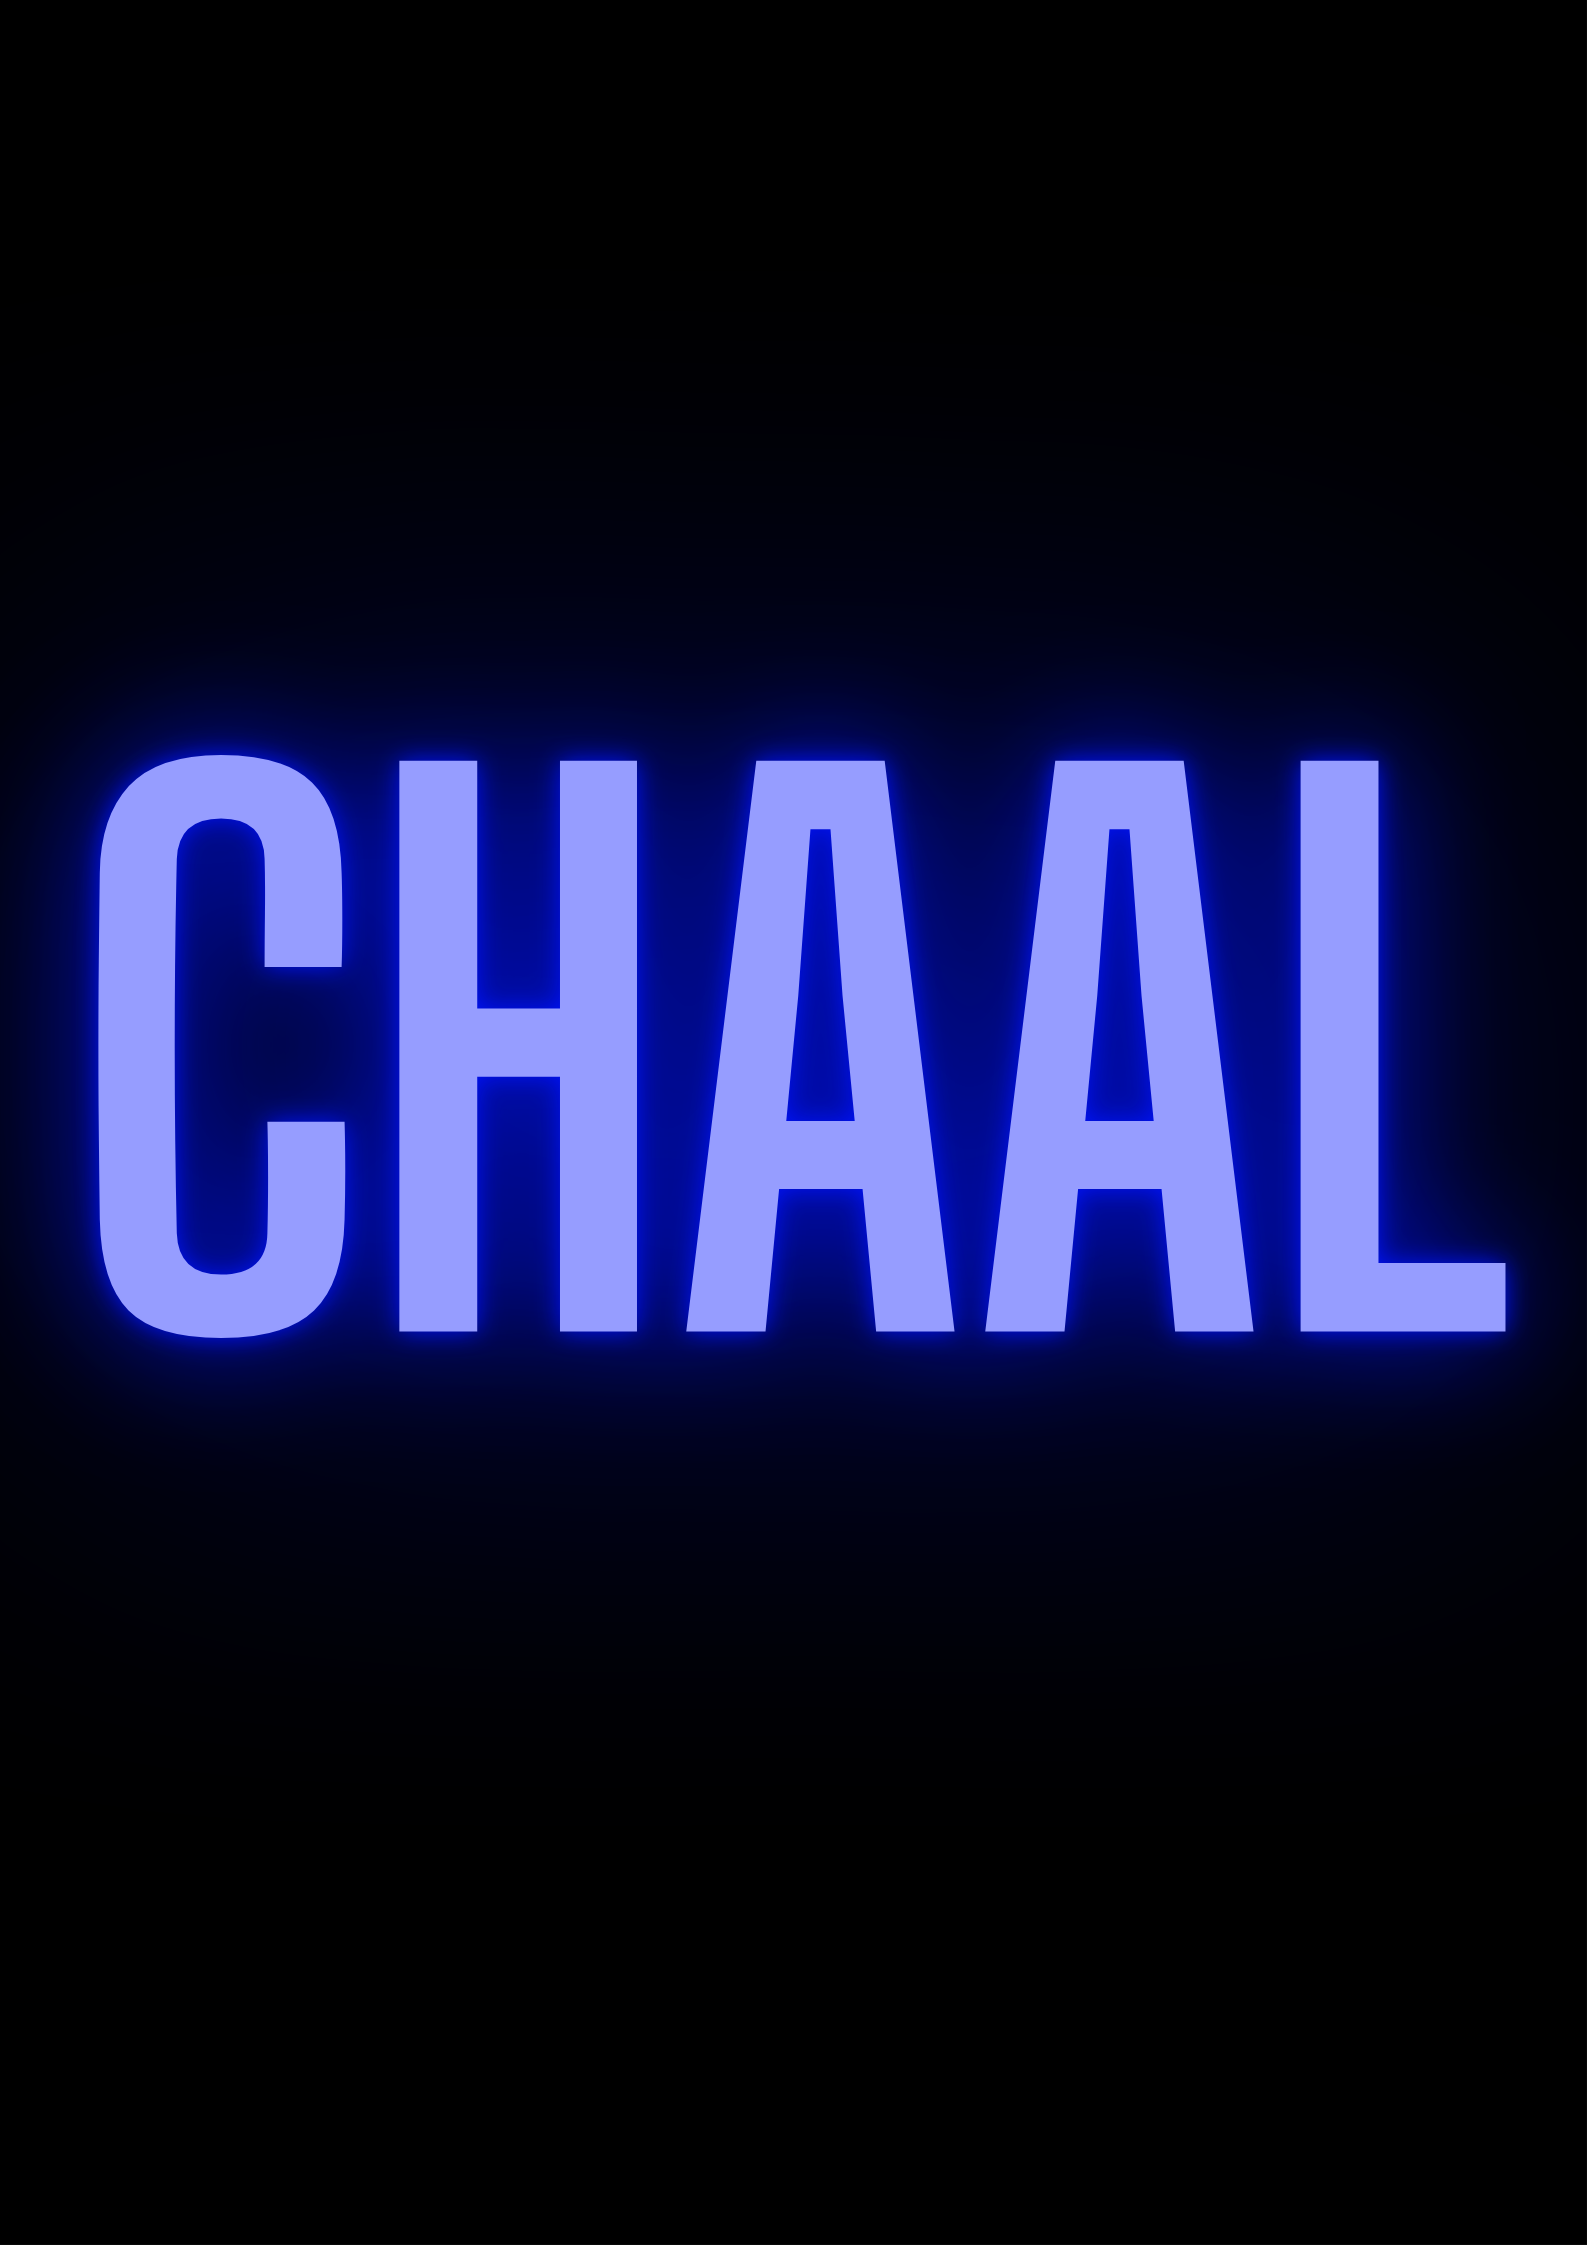 Chaal